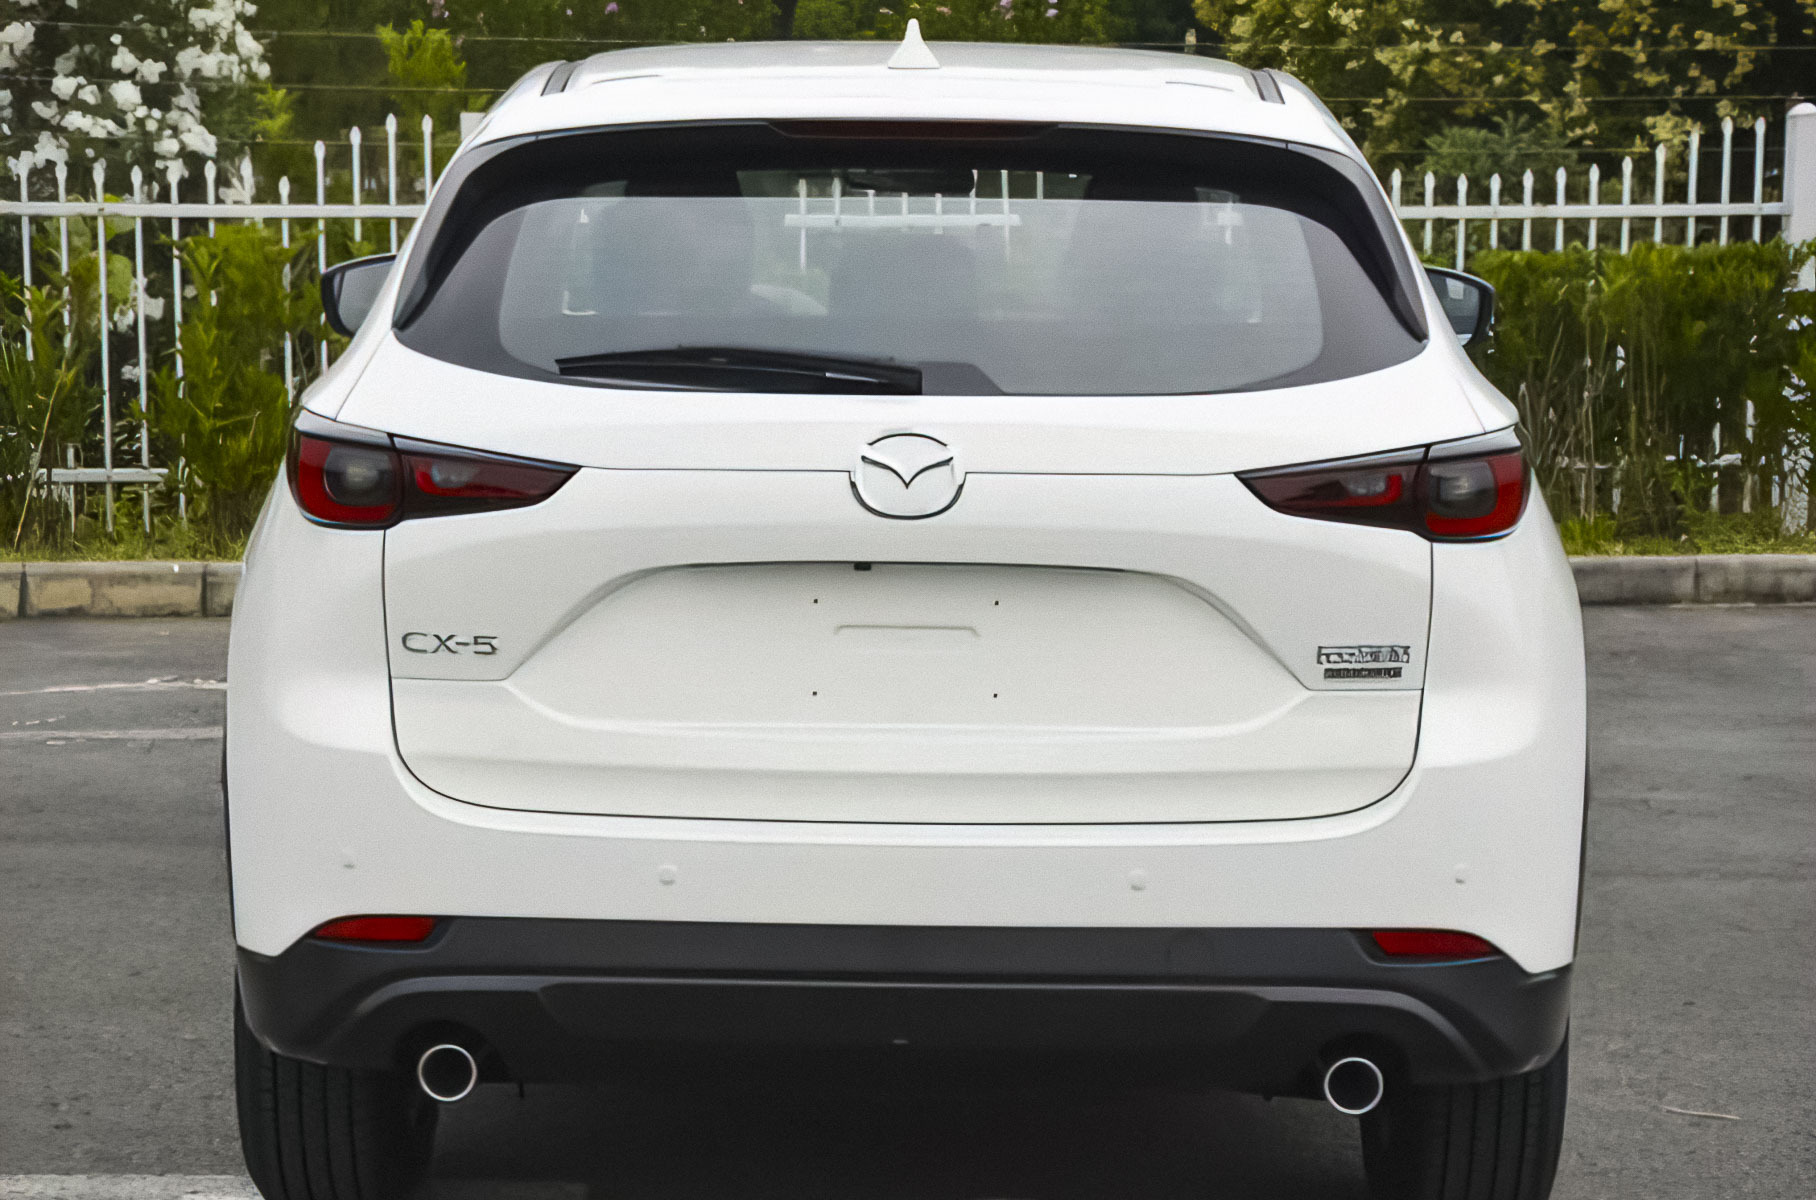 Дизайн обновленной Mazda CX-5 рассекретили раньше срока